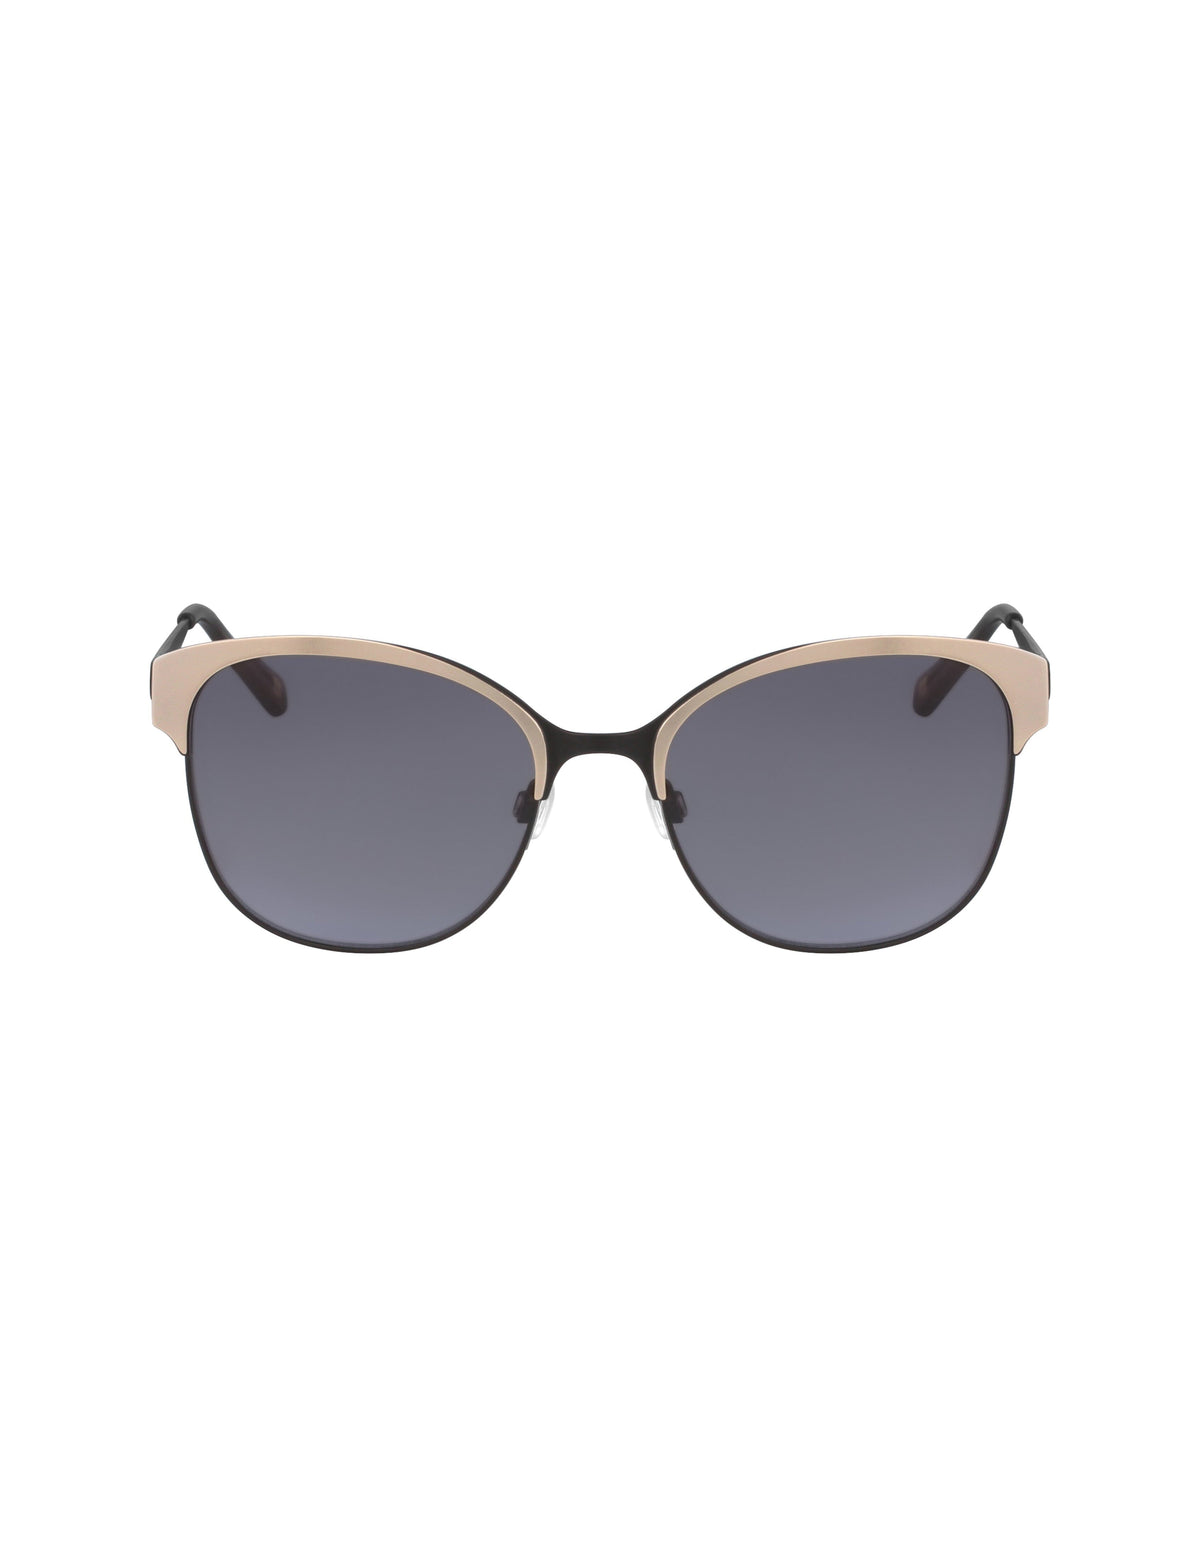 Anne Klein BLACK Two-Tone Metal Square Sunglasses